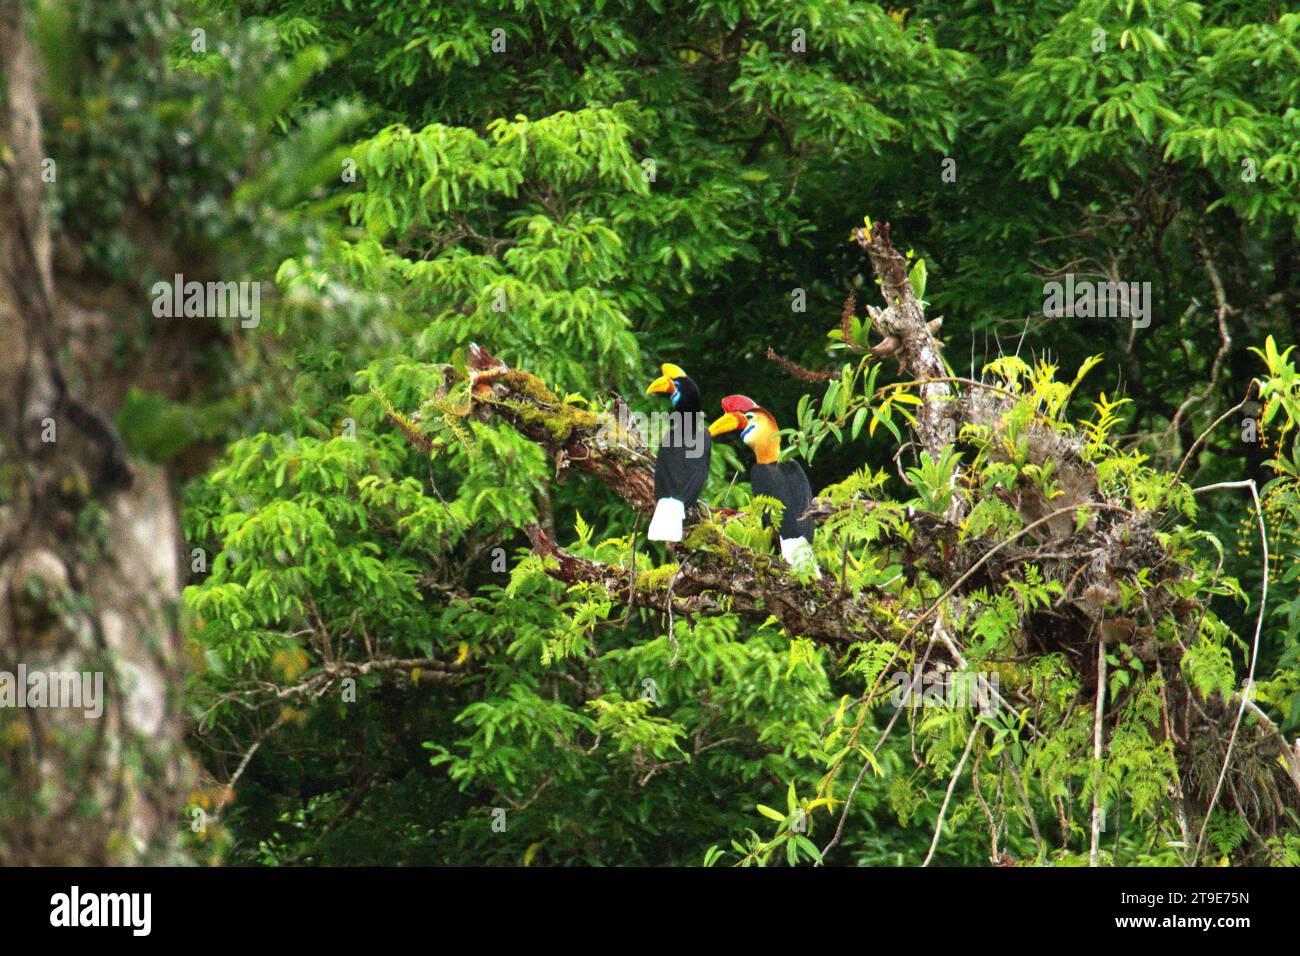 Un paio di carpini (Rhyticeros cassidix), una specie monogama con tassi di riproduzione lenti, viene fotografata mentre si appollaiano su un albero, in un paesaggio vegetato ai piedi del Monte Tangkoko e Duasudara (Dua Saudara) a Bitung, Sulawesi settentrionale, Indonesia. Hornbill, vulnerabile alla caccia a causa dell'alto valore della carne, delle botti e delle piume di coda ha un ruolo importante nella rigenerazione forestale e nel mantenimento di una grande densità di alberi grazie alla sua capacità di agente dispersivo di semi, mentre allo stesso tempo una foresta pluviale sana è importante nella lotta al riscaldamento globale grazie al suo ruolo di assorbimento del carbonio Foto Stock